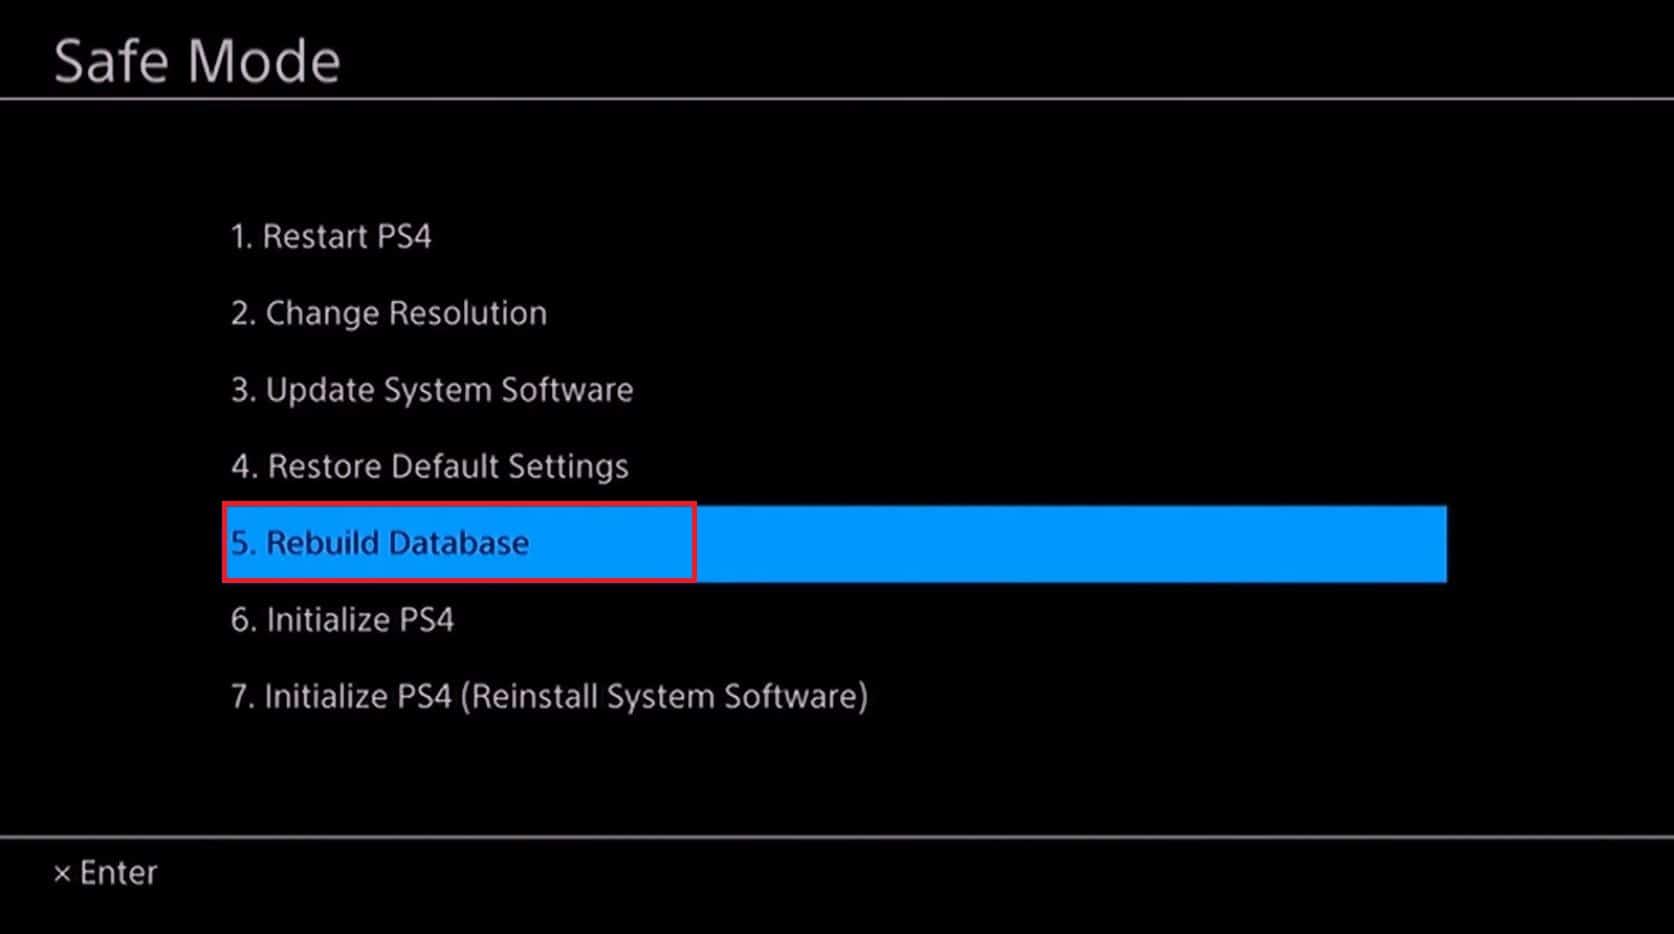 PS4 safe mode rebuild database